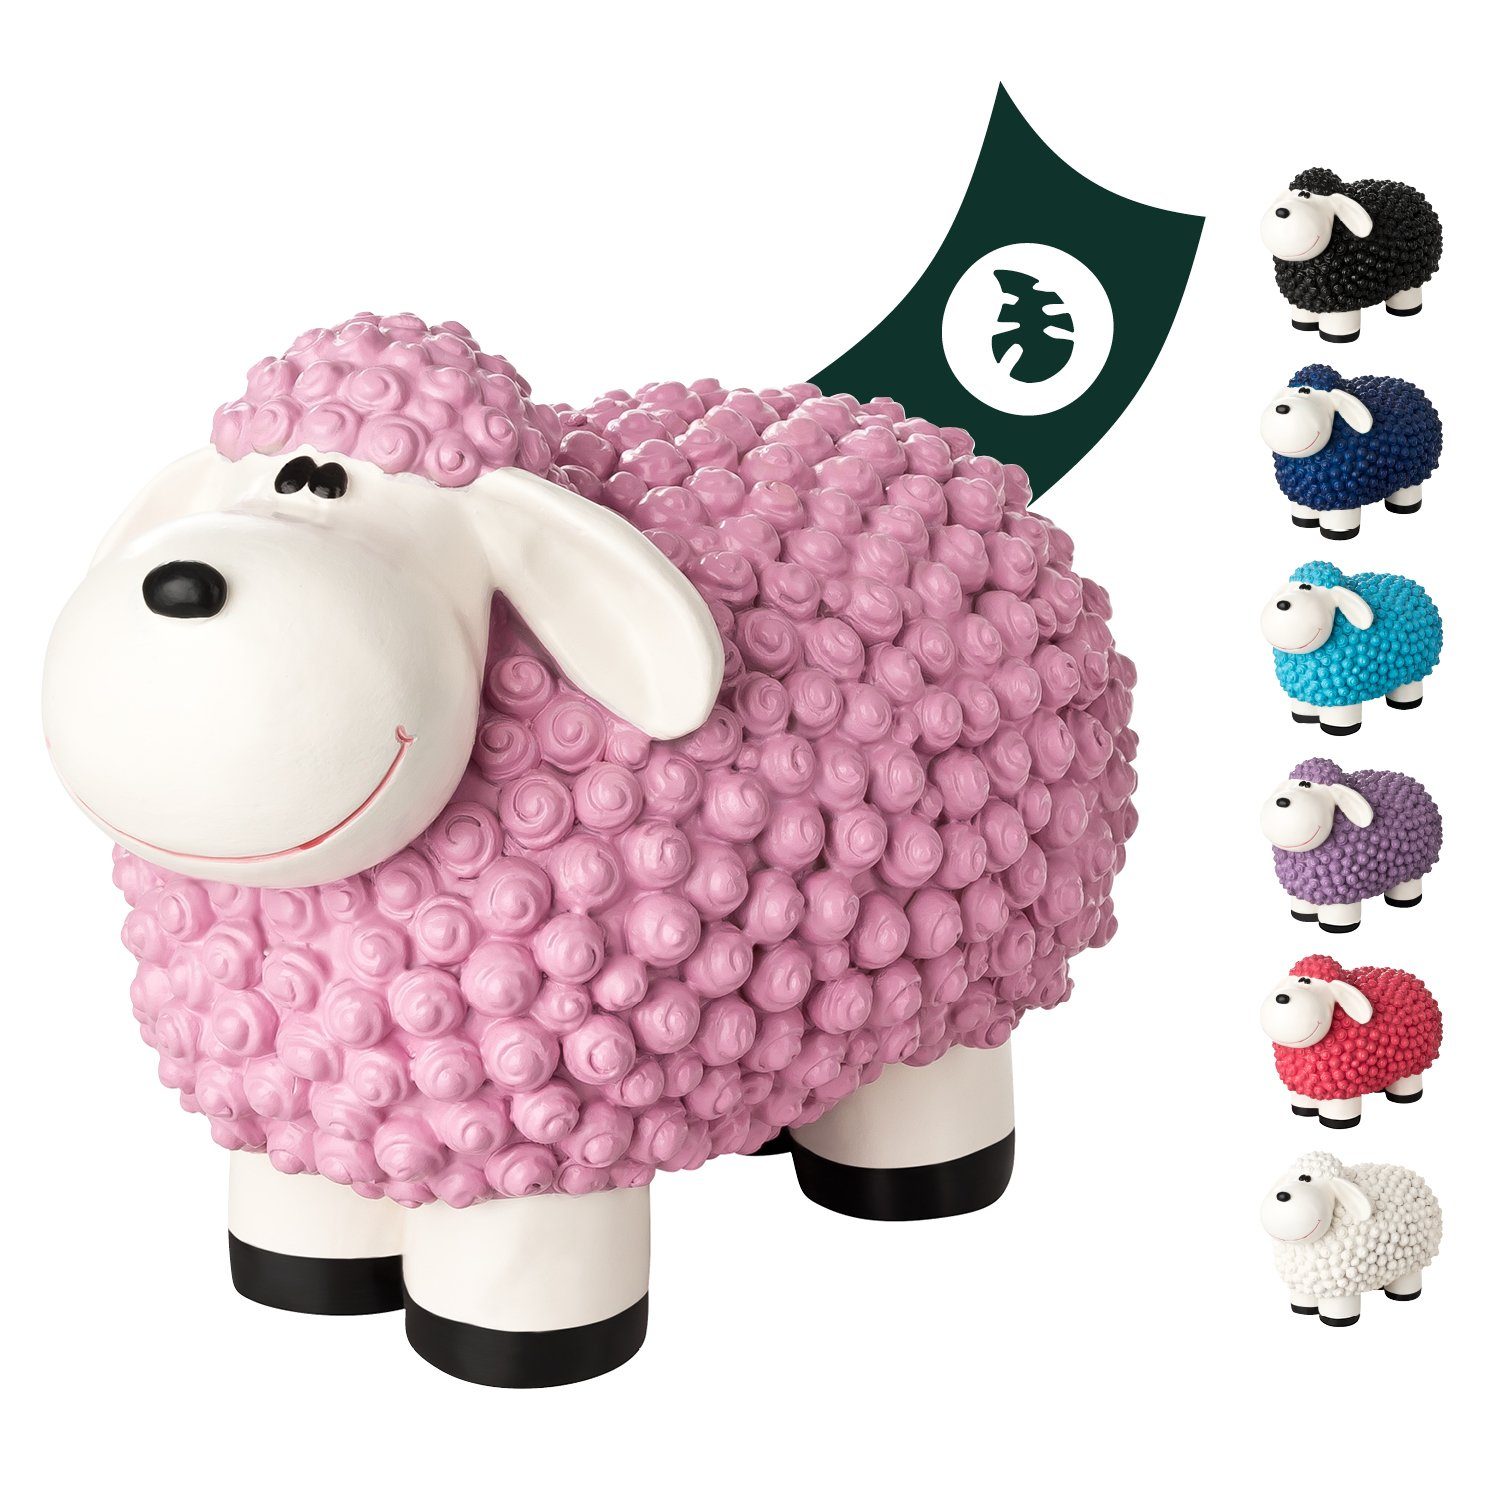 VERDOBA Gartenfigur Gartendeko Mini Schaf - Wetterfeste Gartenfigur - Deko Schaf für Außen, Polyresin Pastell rosa